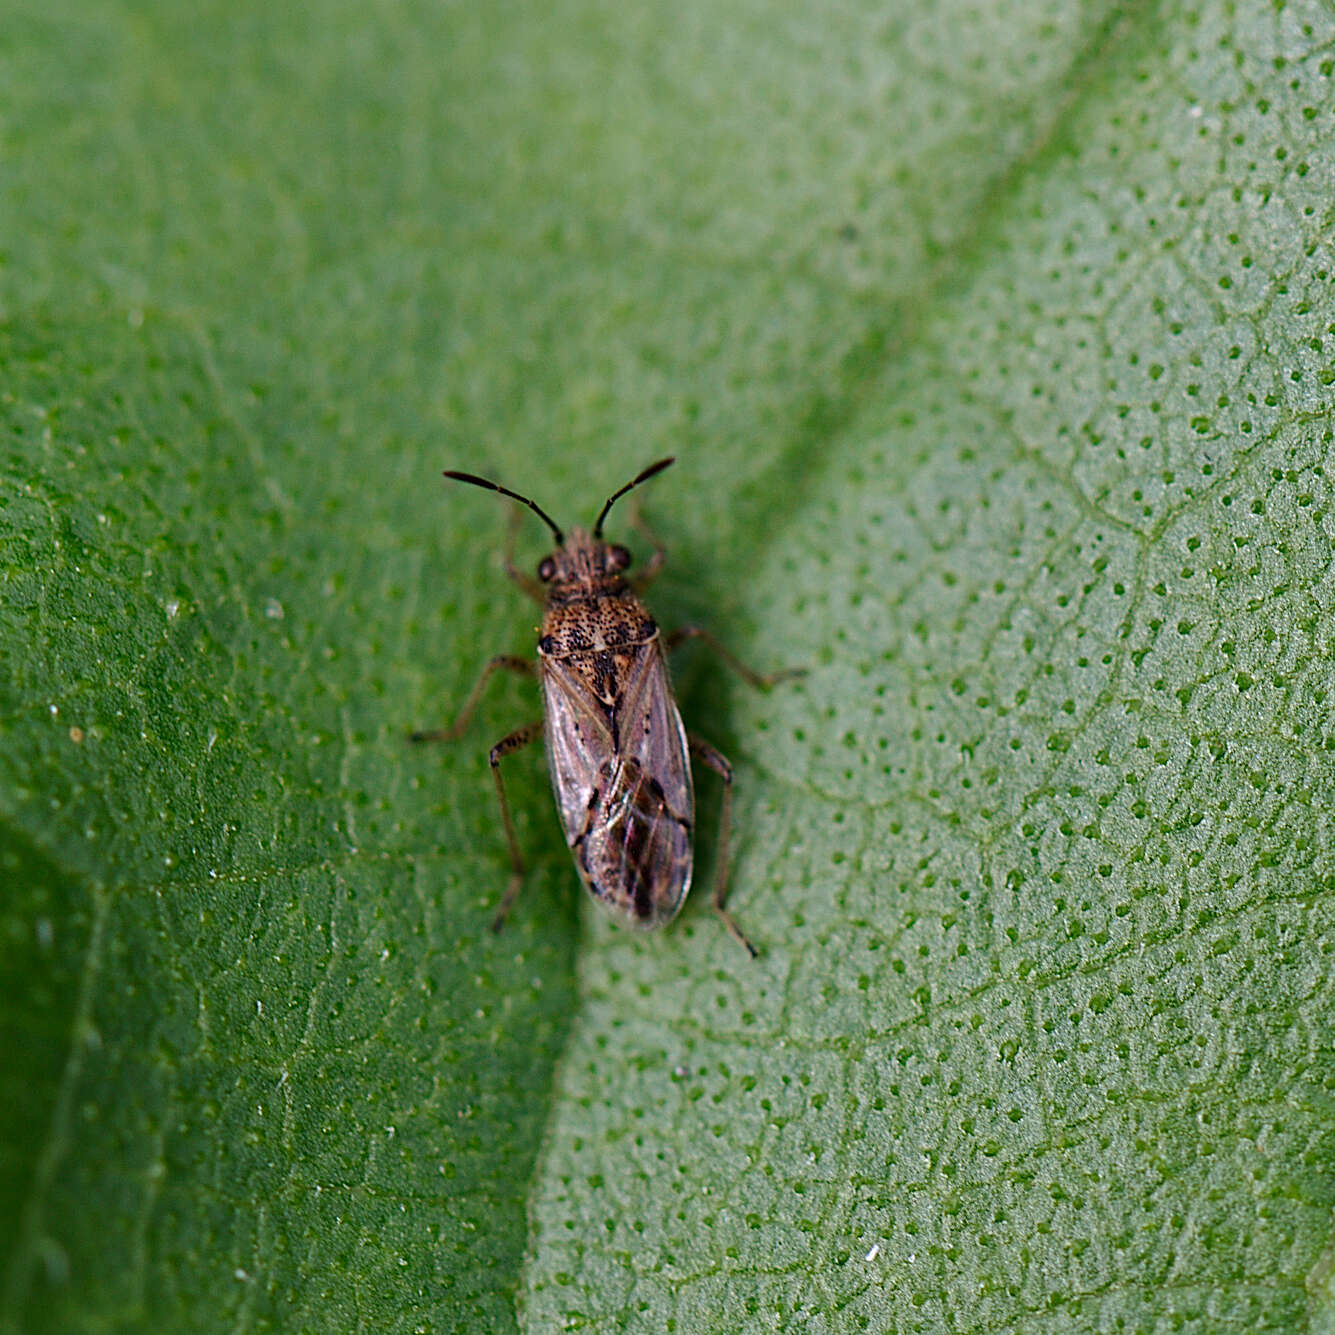 Image of Seed bug